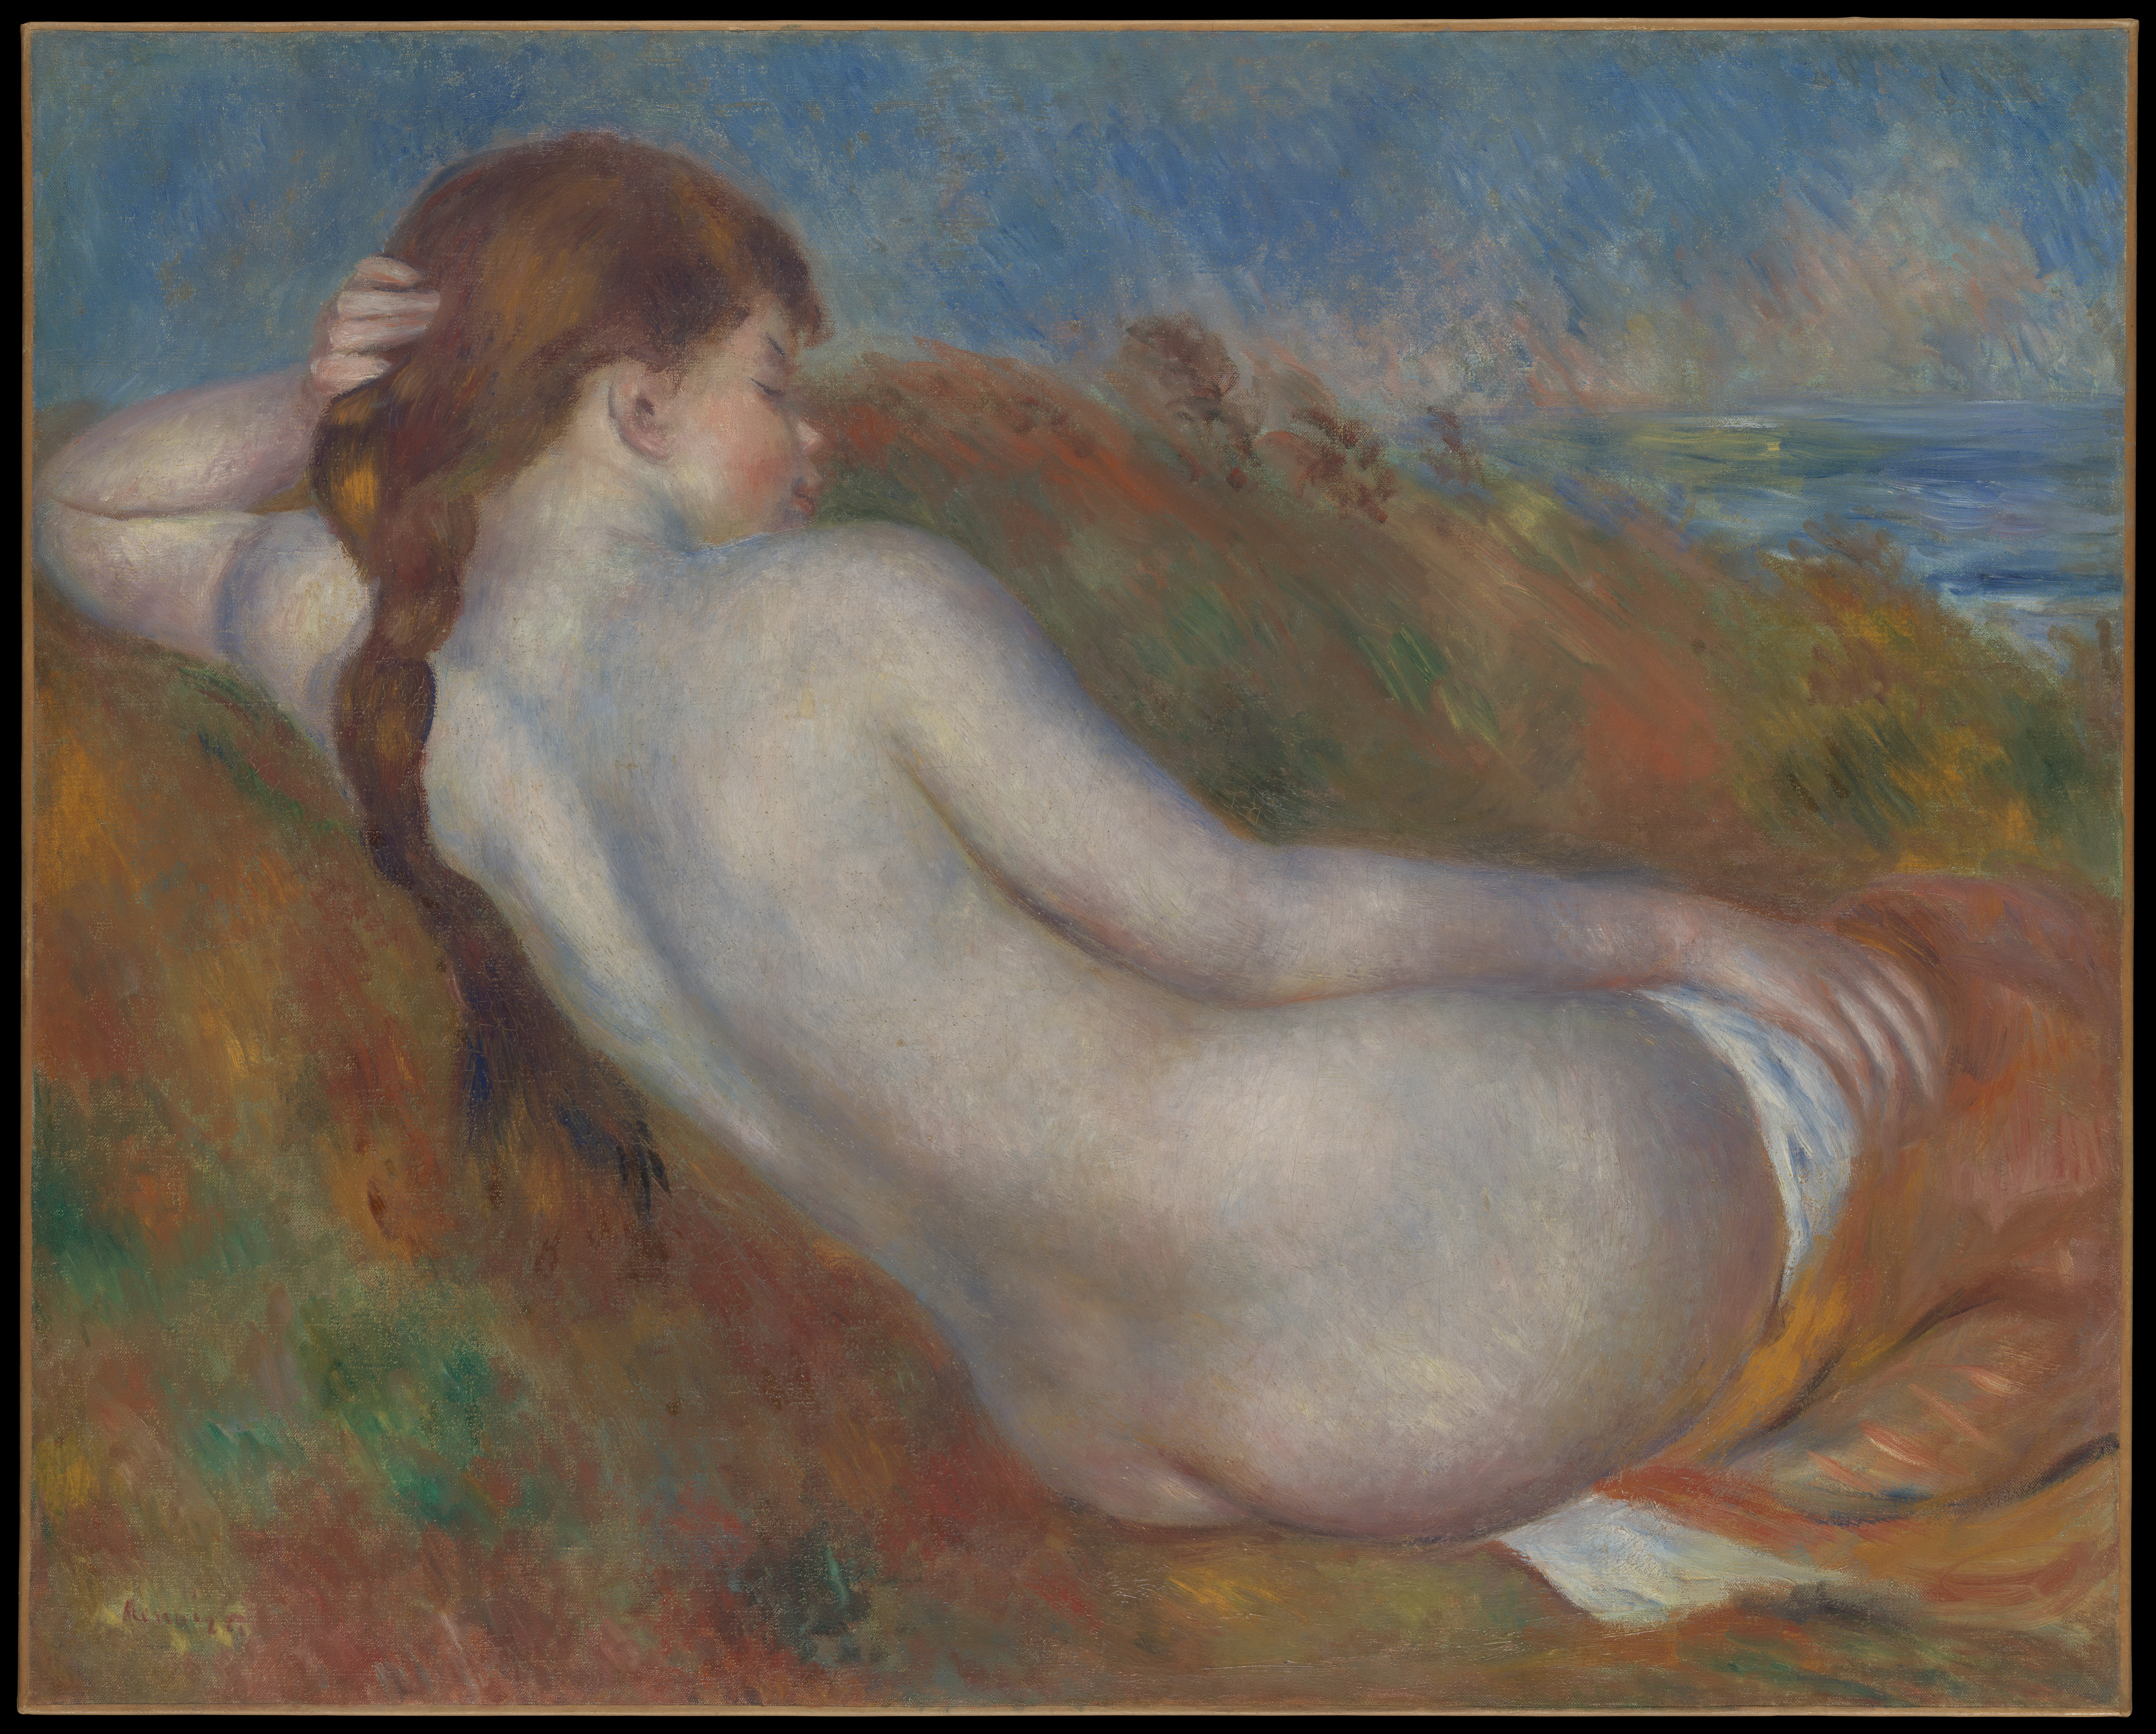 Оголена лежачи by Pierre-Auguste Renoir - 1883 - 65.1 x 81.3 cm 